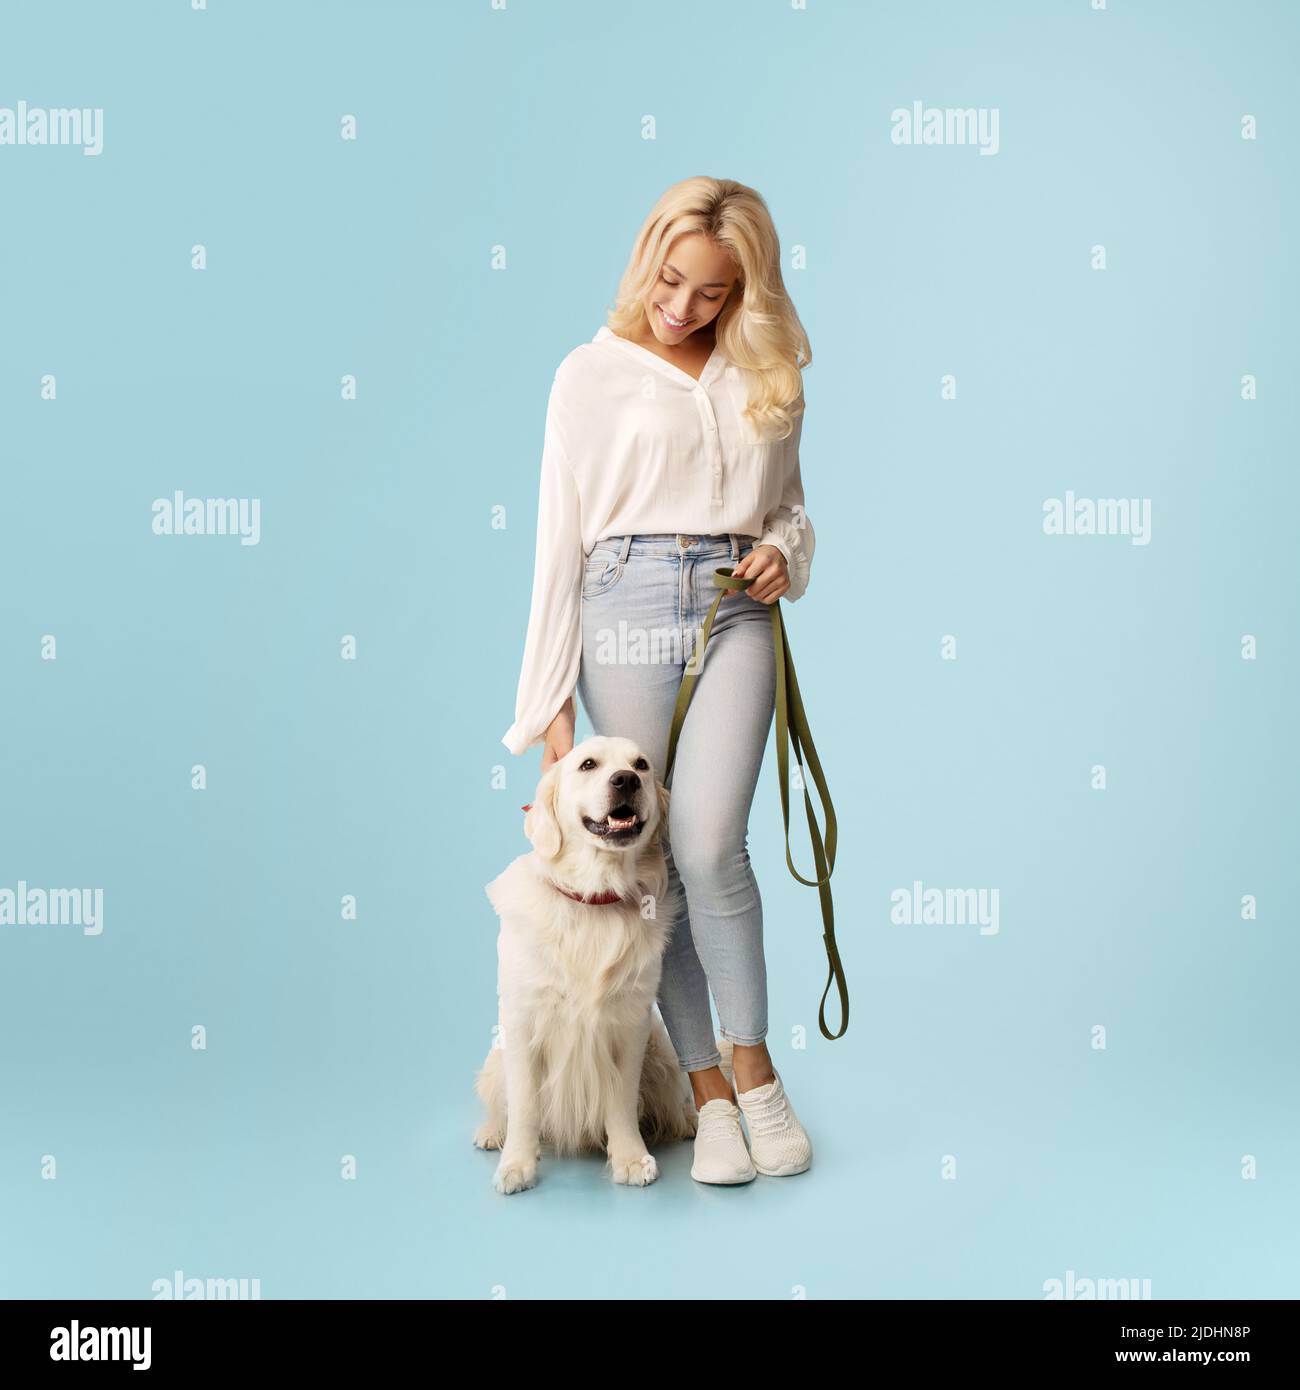 Freundschaftskonzept. Fröhliche Frau posiert mit ihrem glücklichen labrador-Hund an der Leine und steht auf blauem Hintergrund Stockfoto